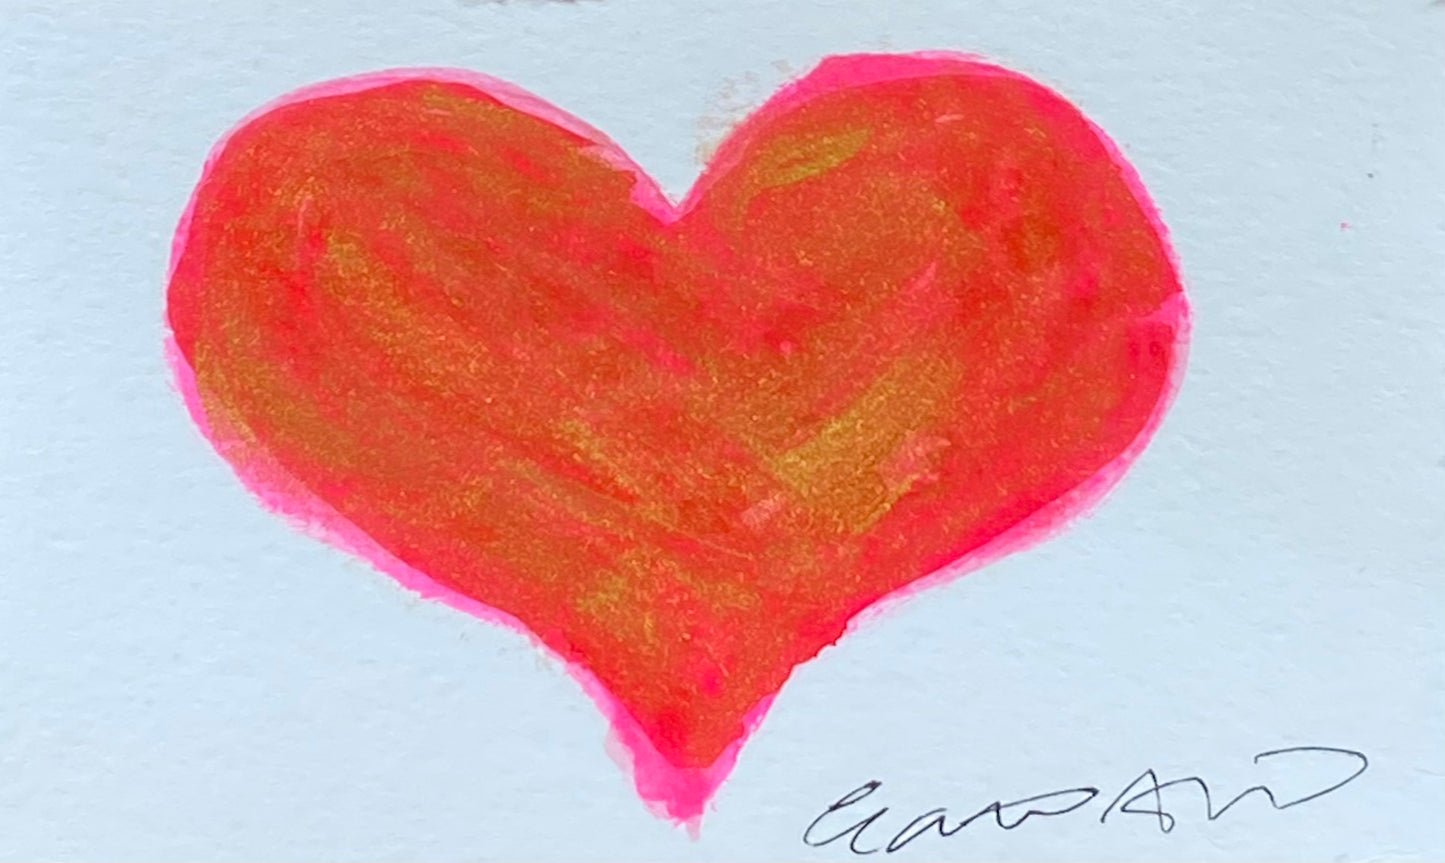 Alluring - mini heart on paper (3x4.5)